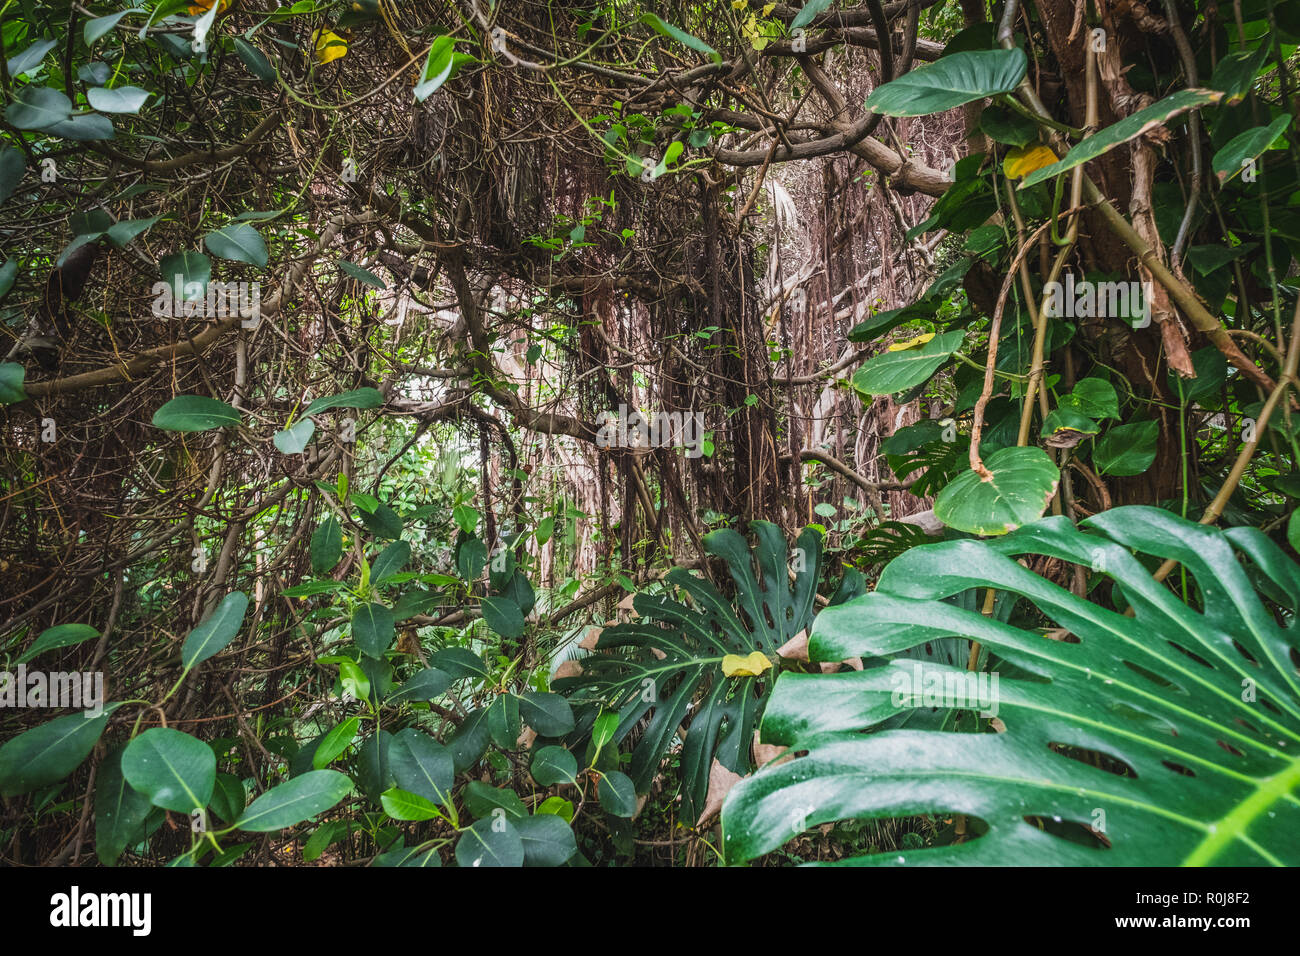 La forêt tropicale ou la jungle - Intérieur - paysage de forêt tropicale Banque D'Images